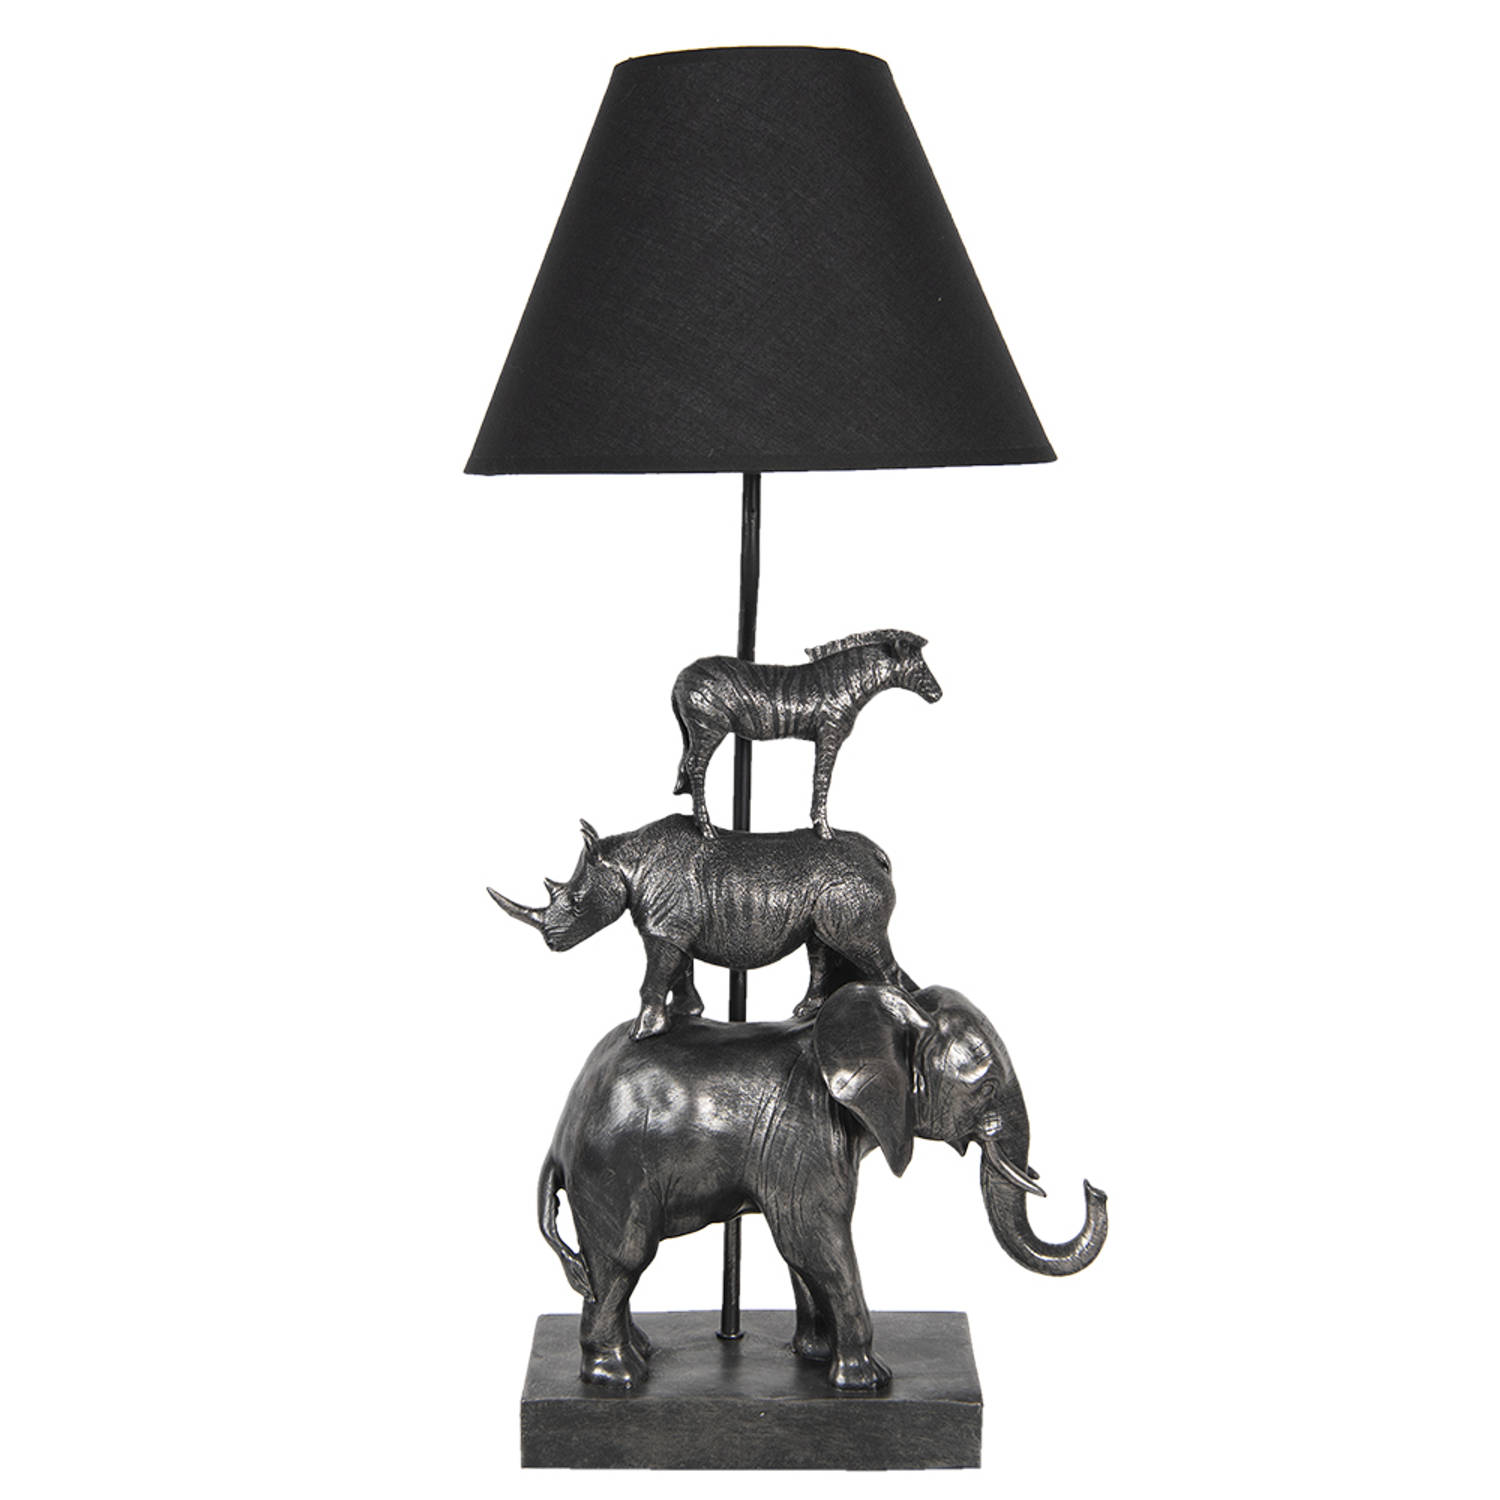 HAES DECO - Tafellamp - City Jungle - met Olifant, Neushoorn en Zebra, formaat 32x27x65 cm - Zilverkleurig met Zwart - Bureaulamp, Sfeerlamp. Nachtlampje